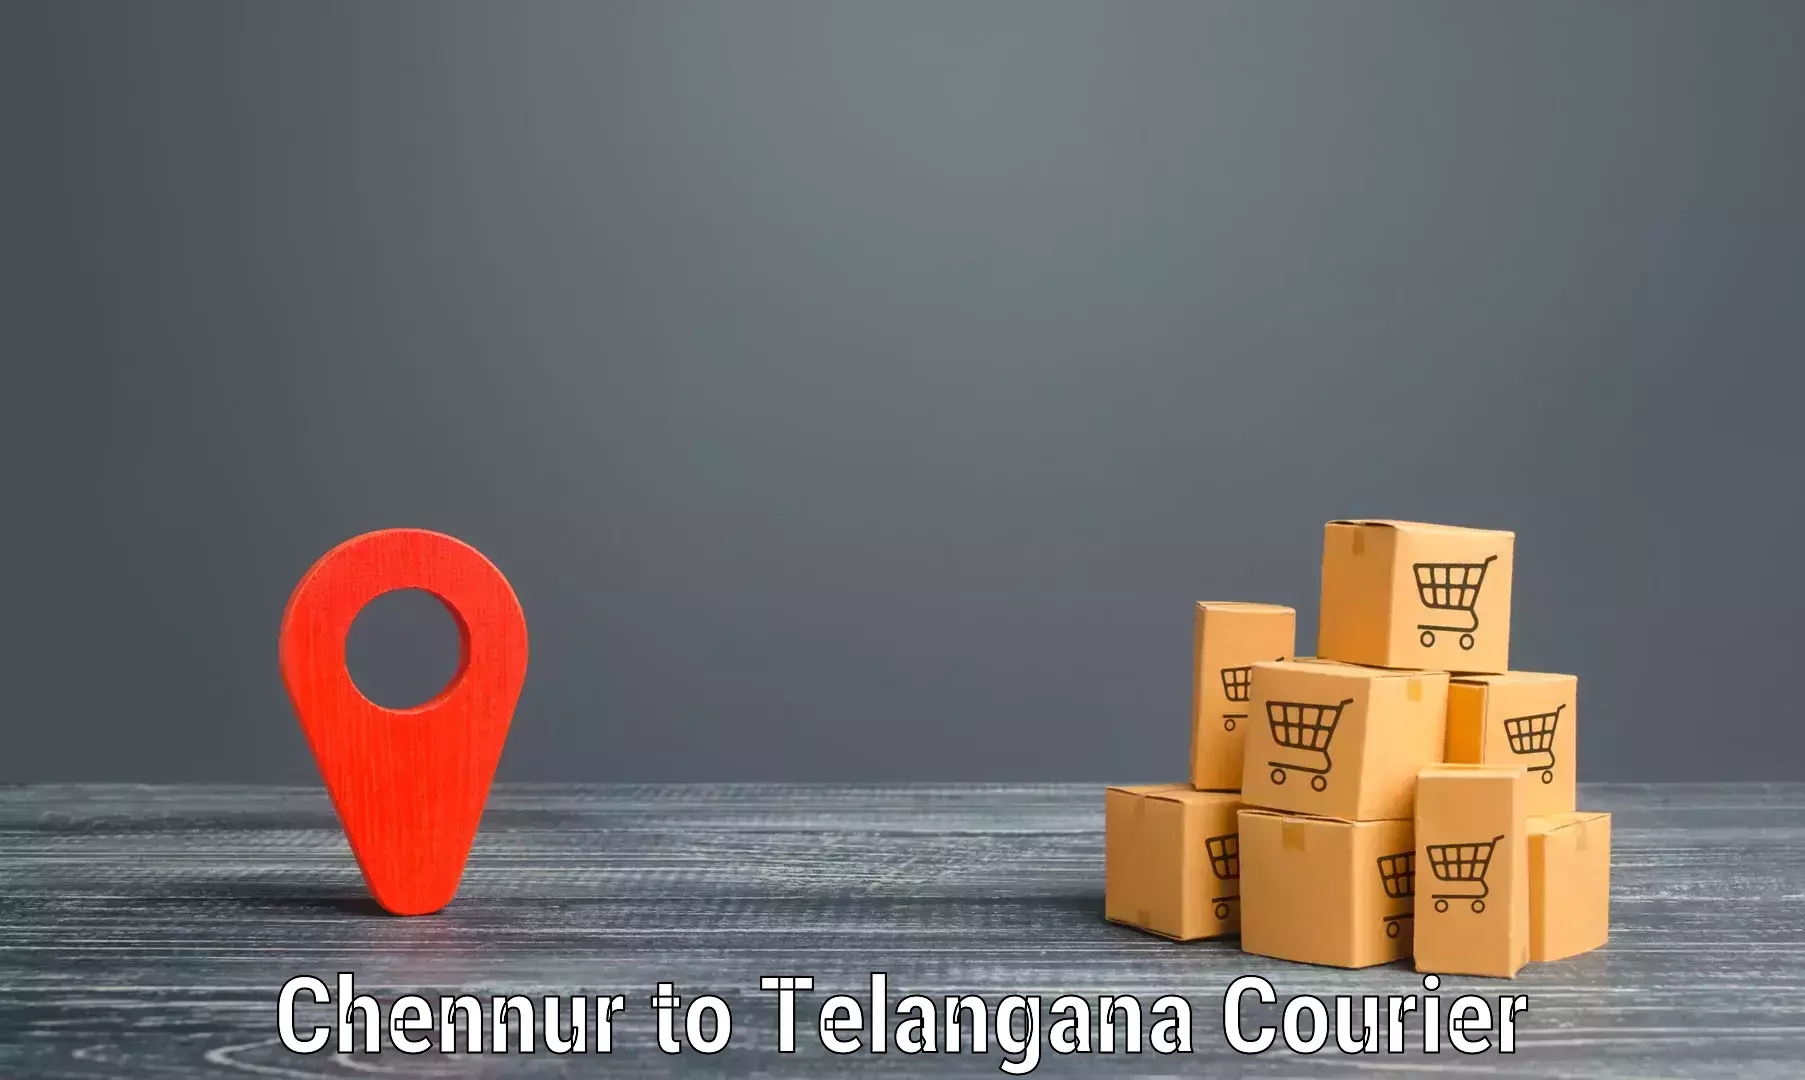 International courier rates in Chennur to Manneguda